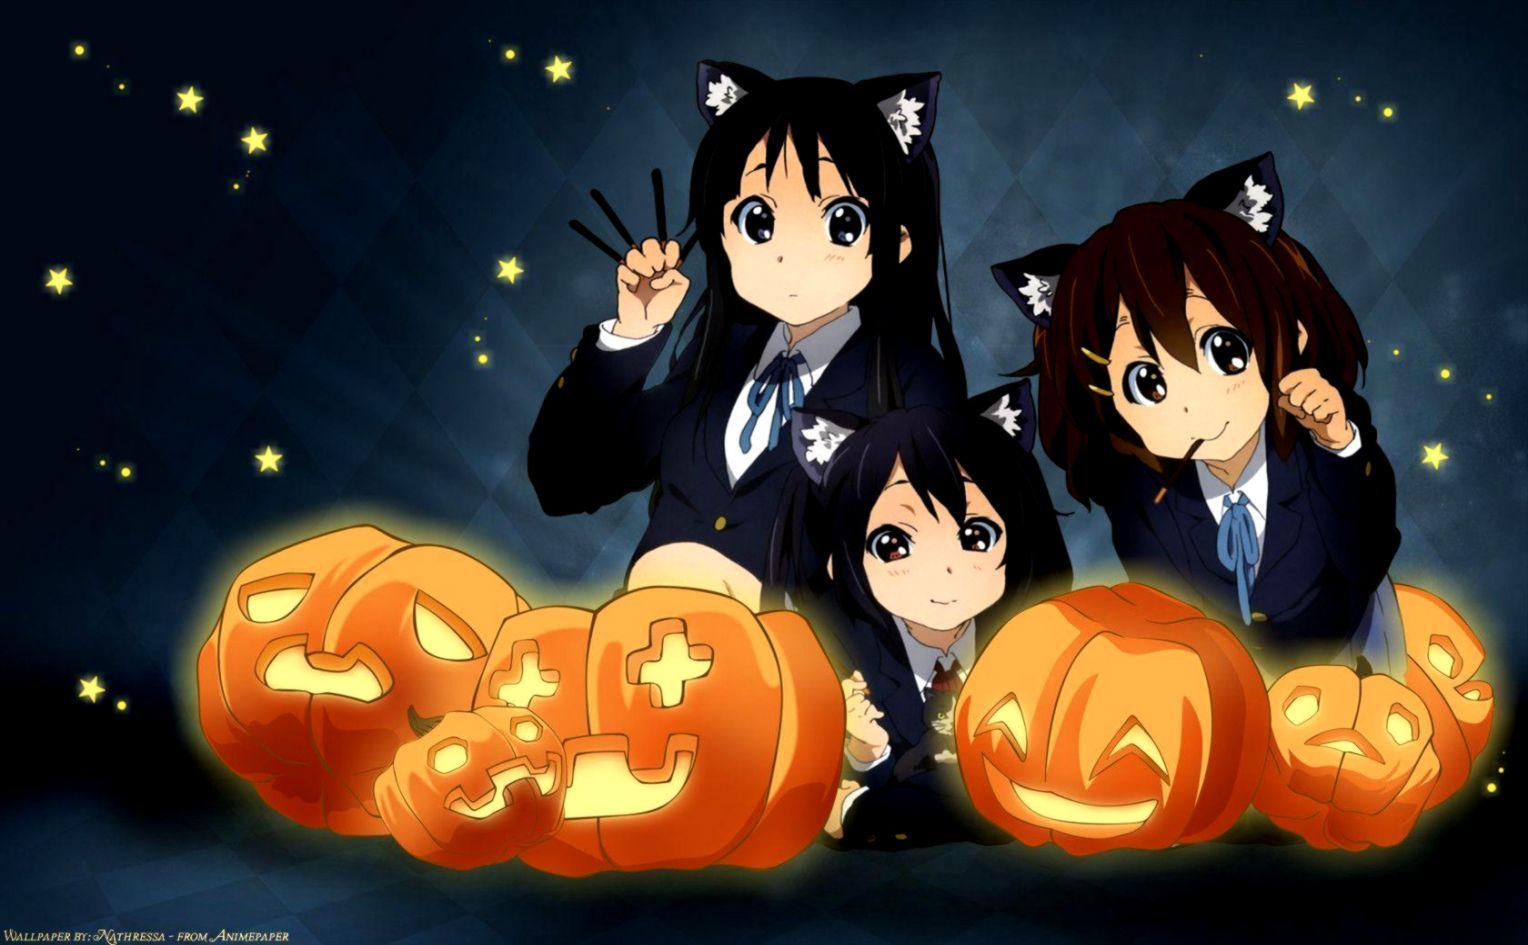 Aesthetic anime halloween HD wallpapers | Pxfuel